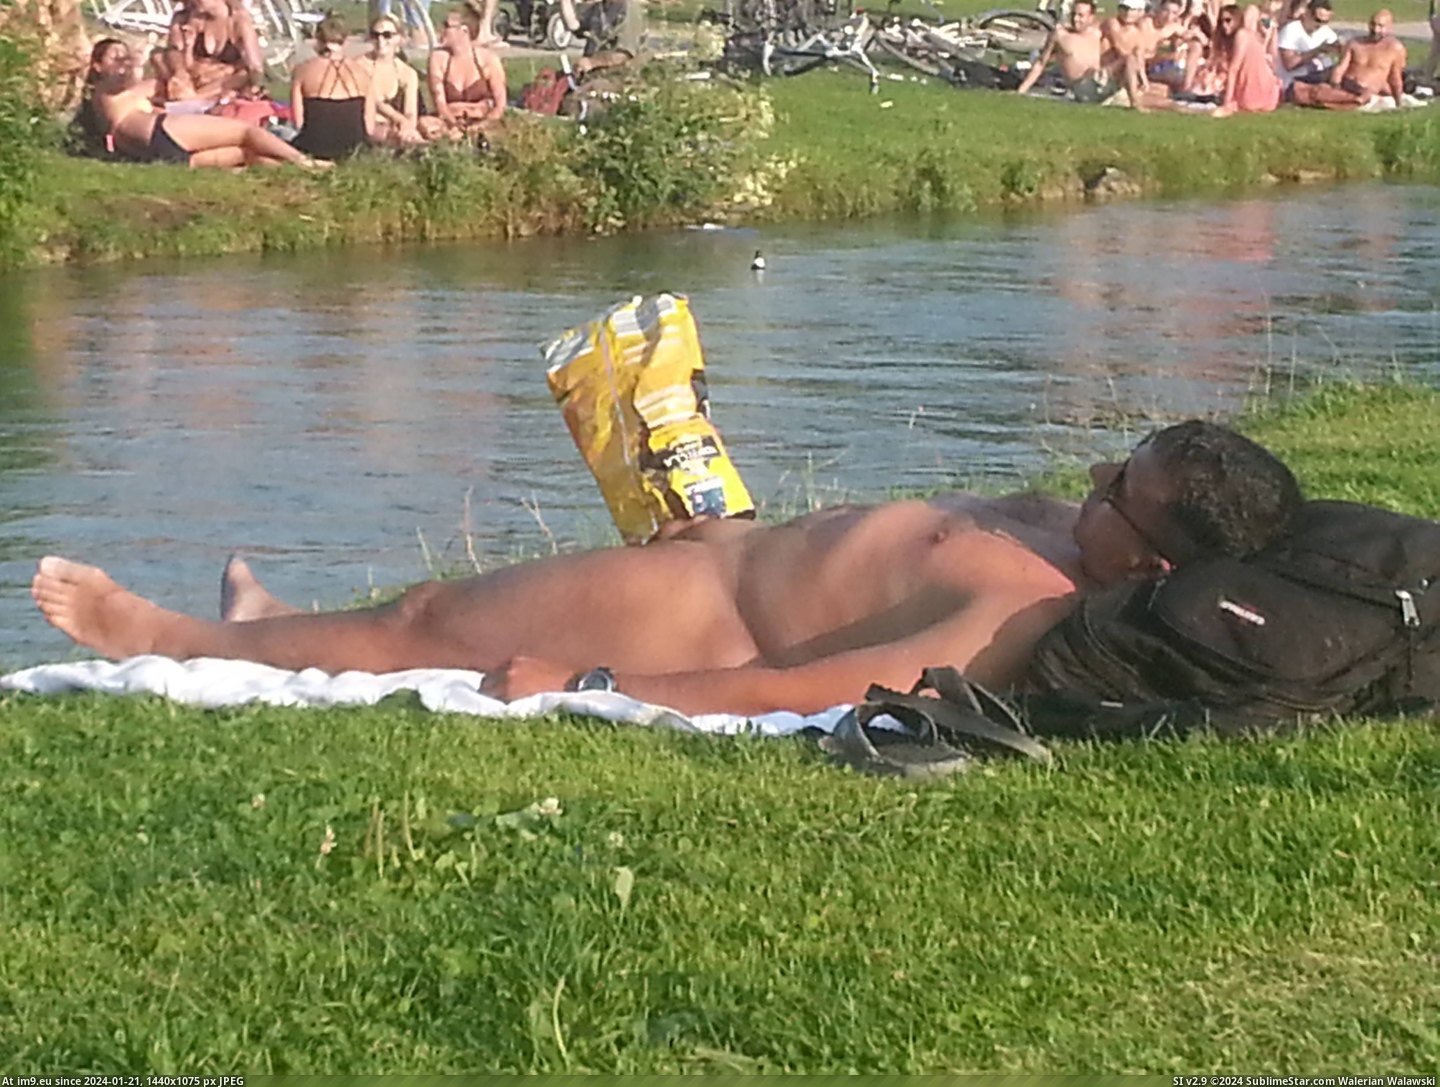 #Wtf #Naked #Man #Crisp #Erection #Sleeping #Bag #Puts [Wtf] Naked sleeping man gets erection so someone puts crisp bag over it. Pic. (Bild von album My r/WTF favs))